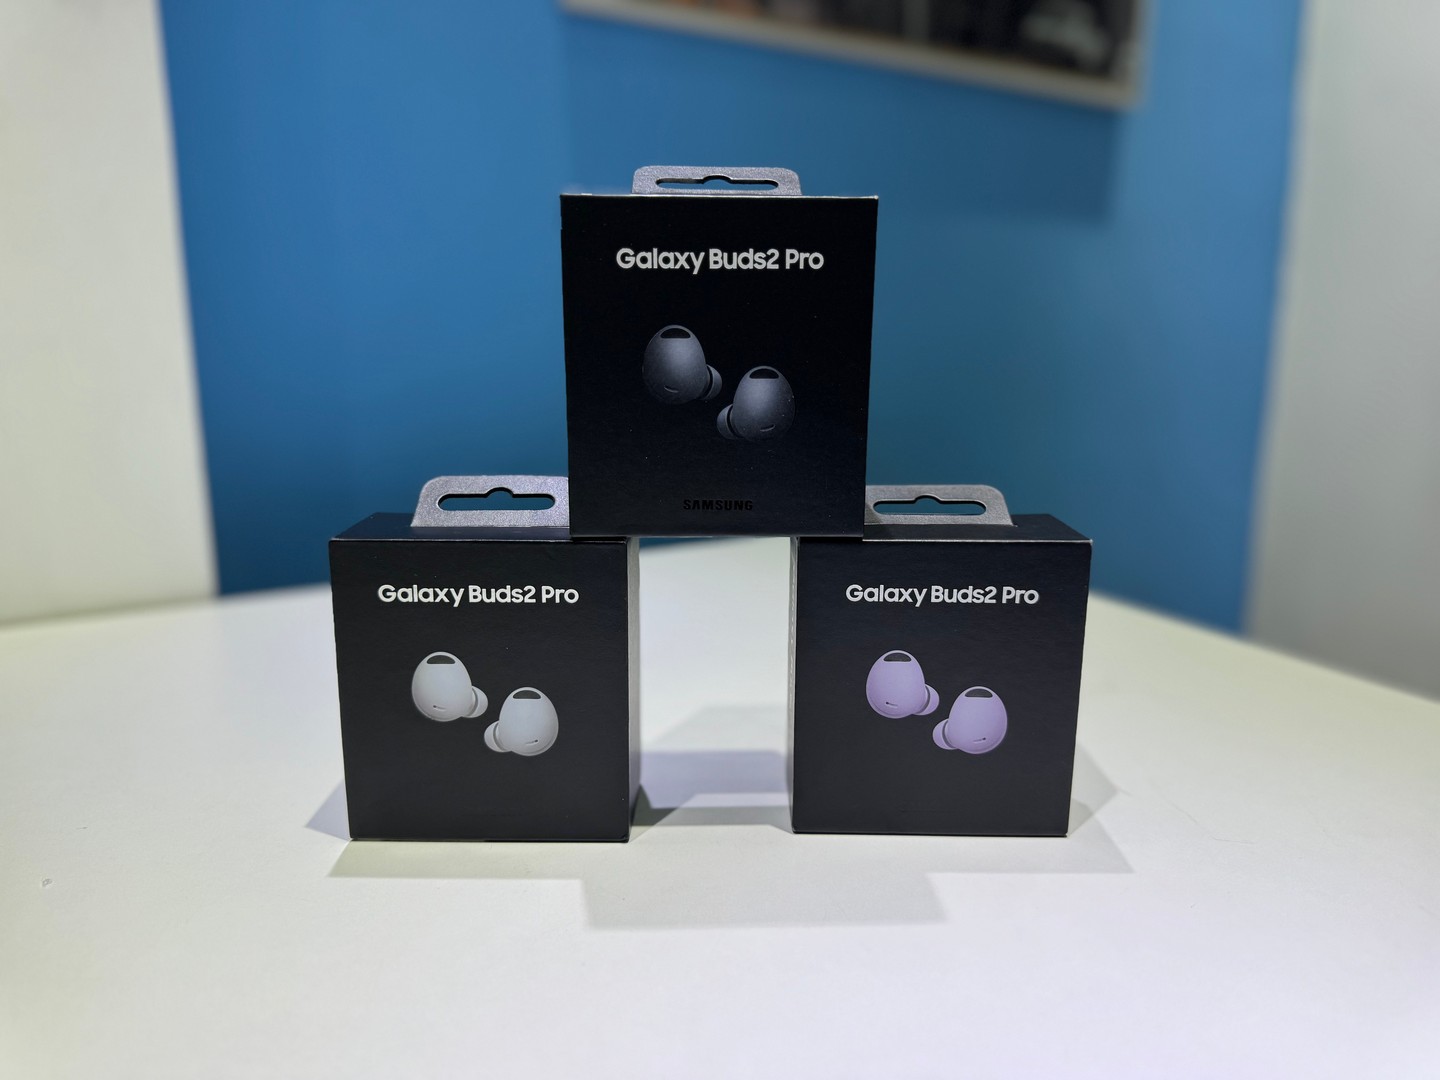 camaras y audio - Vendo Audífonos inalámbricos Galaxy Buds2 Pro Nuevo | OriginaleS RD$ 9,500 NEG 0